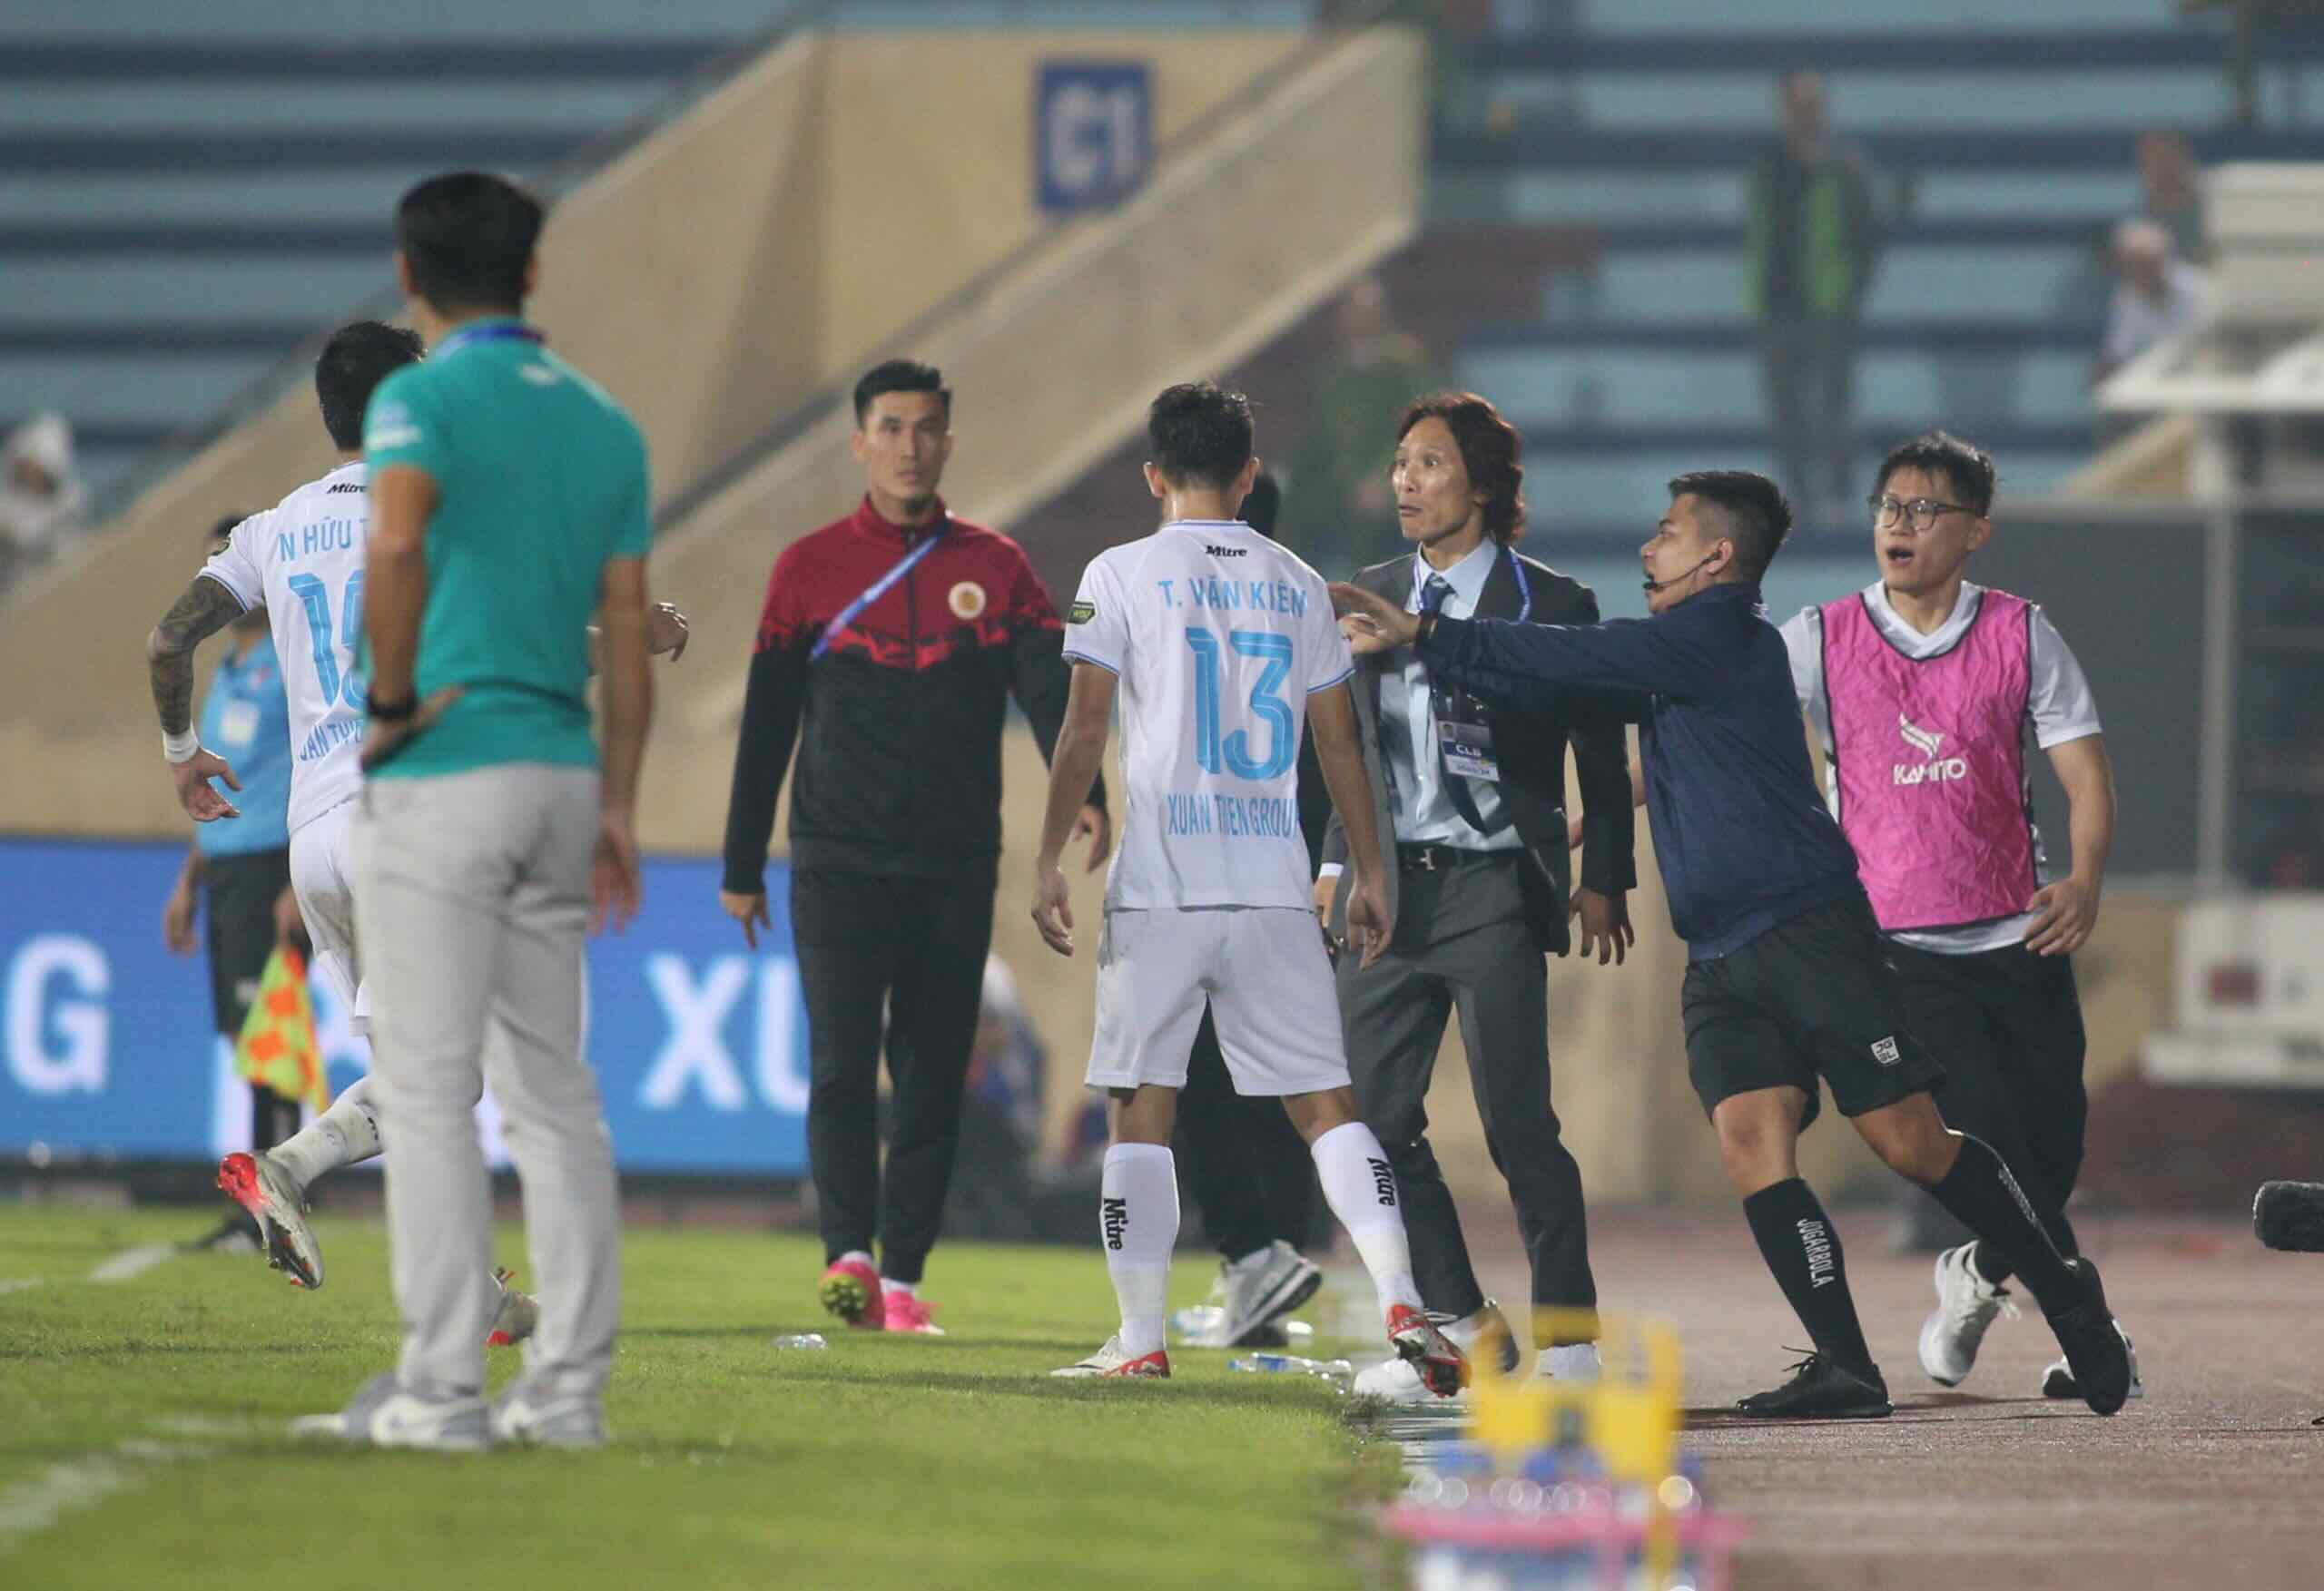 HLV Gong Oh Kyun mất bình tĩnh, xô xát với cầu thủ Nam Định - Ảnh 1